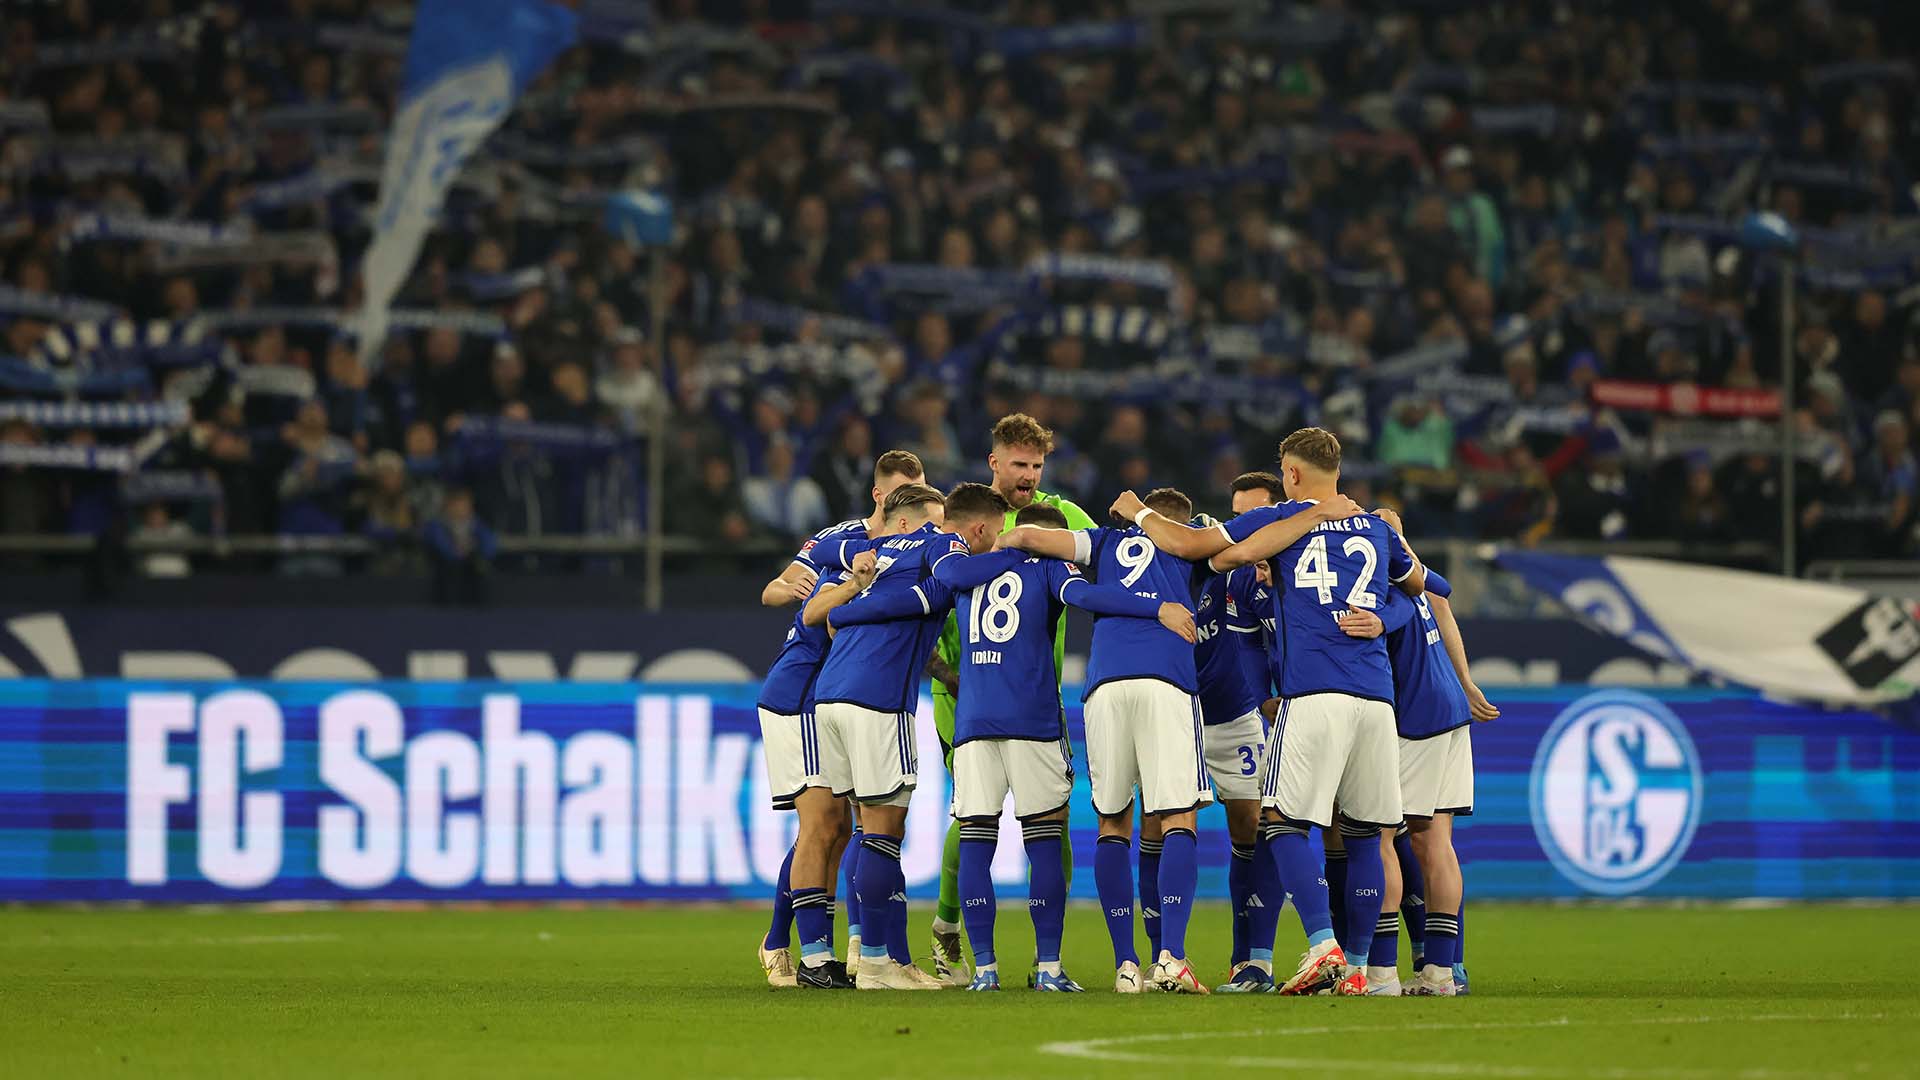 El histórico Schalke 04 se ve inmerso en una profunda crisis que, de no cambiar drásticamente la situación, podría poner en serio peligro la existencia del club. Un descenso a tercera división supondría el final del Schalke tal y como se conoce.